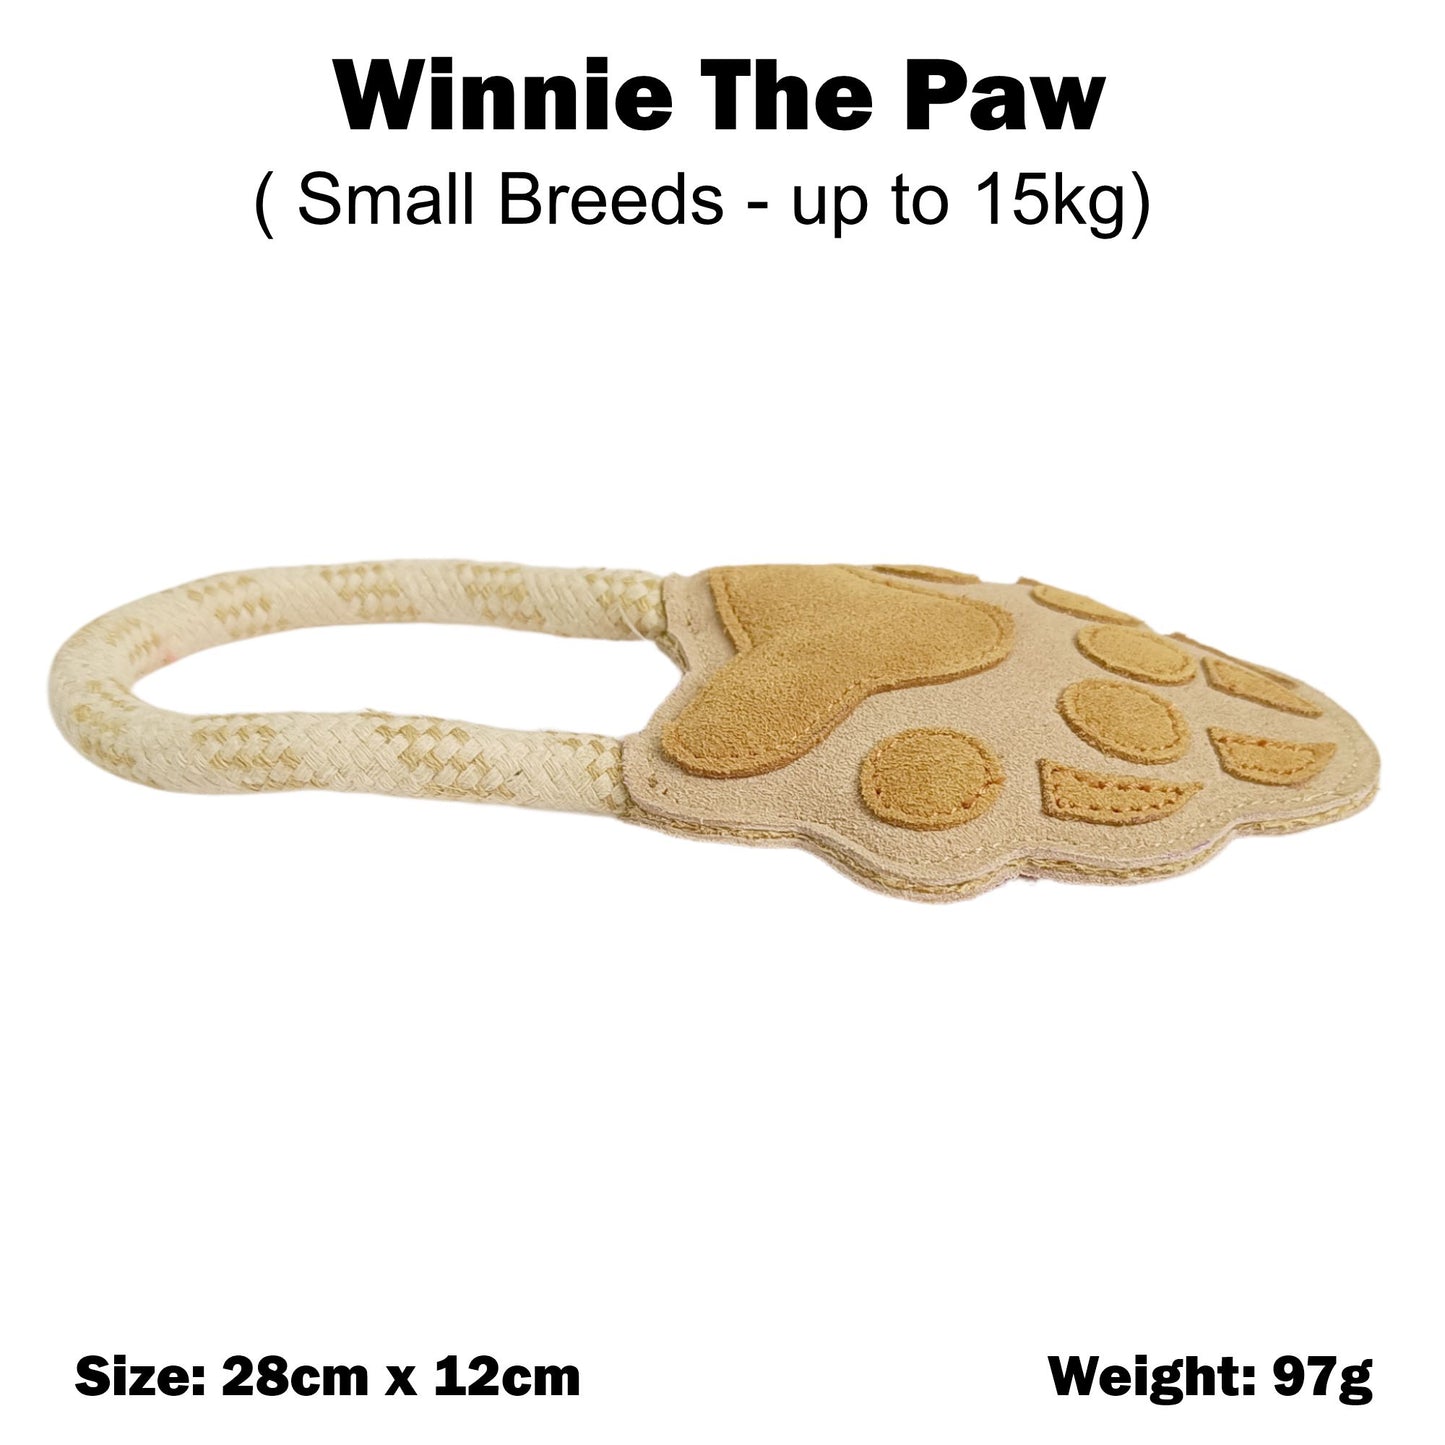 Winnie the Paw